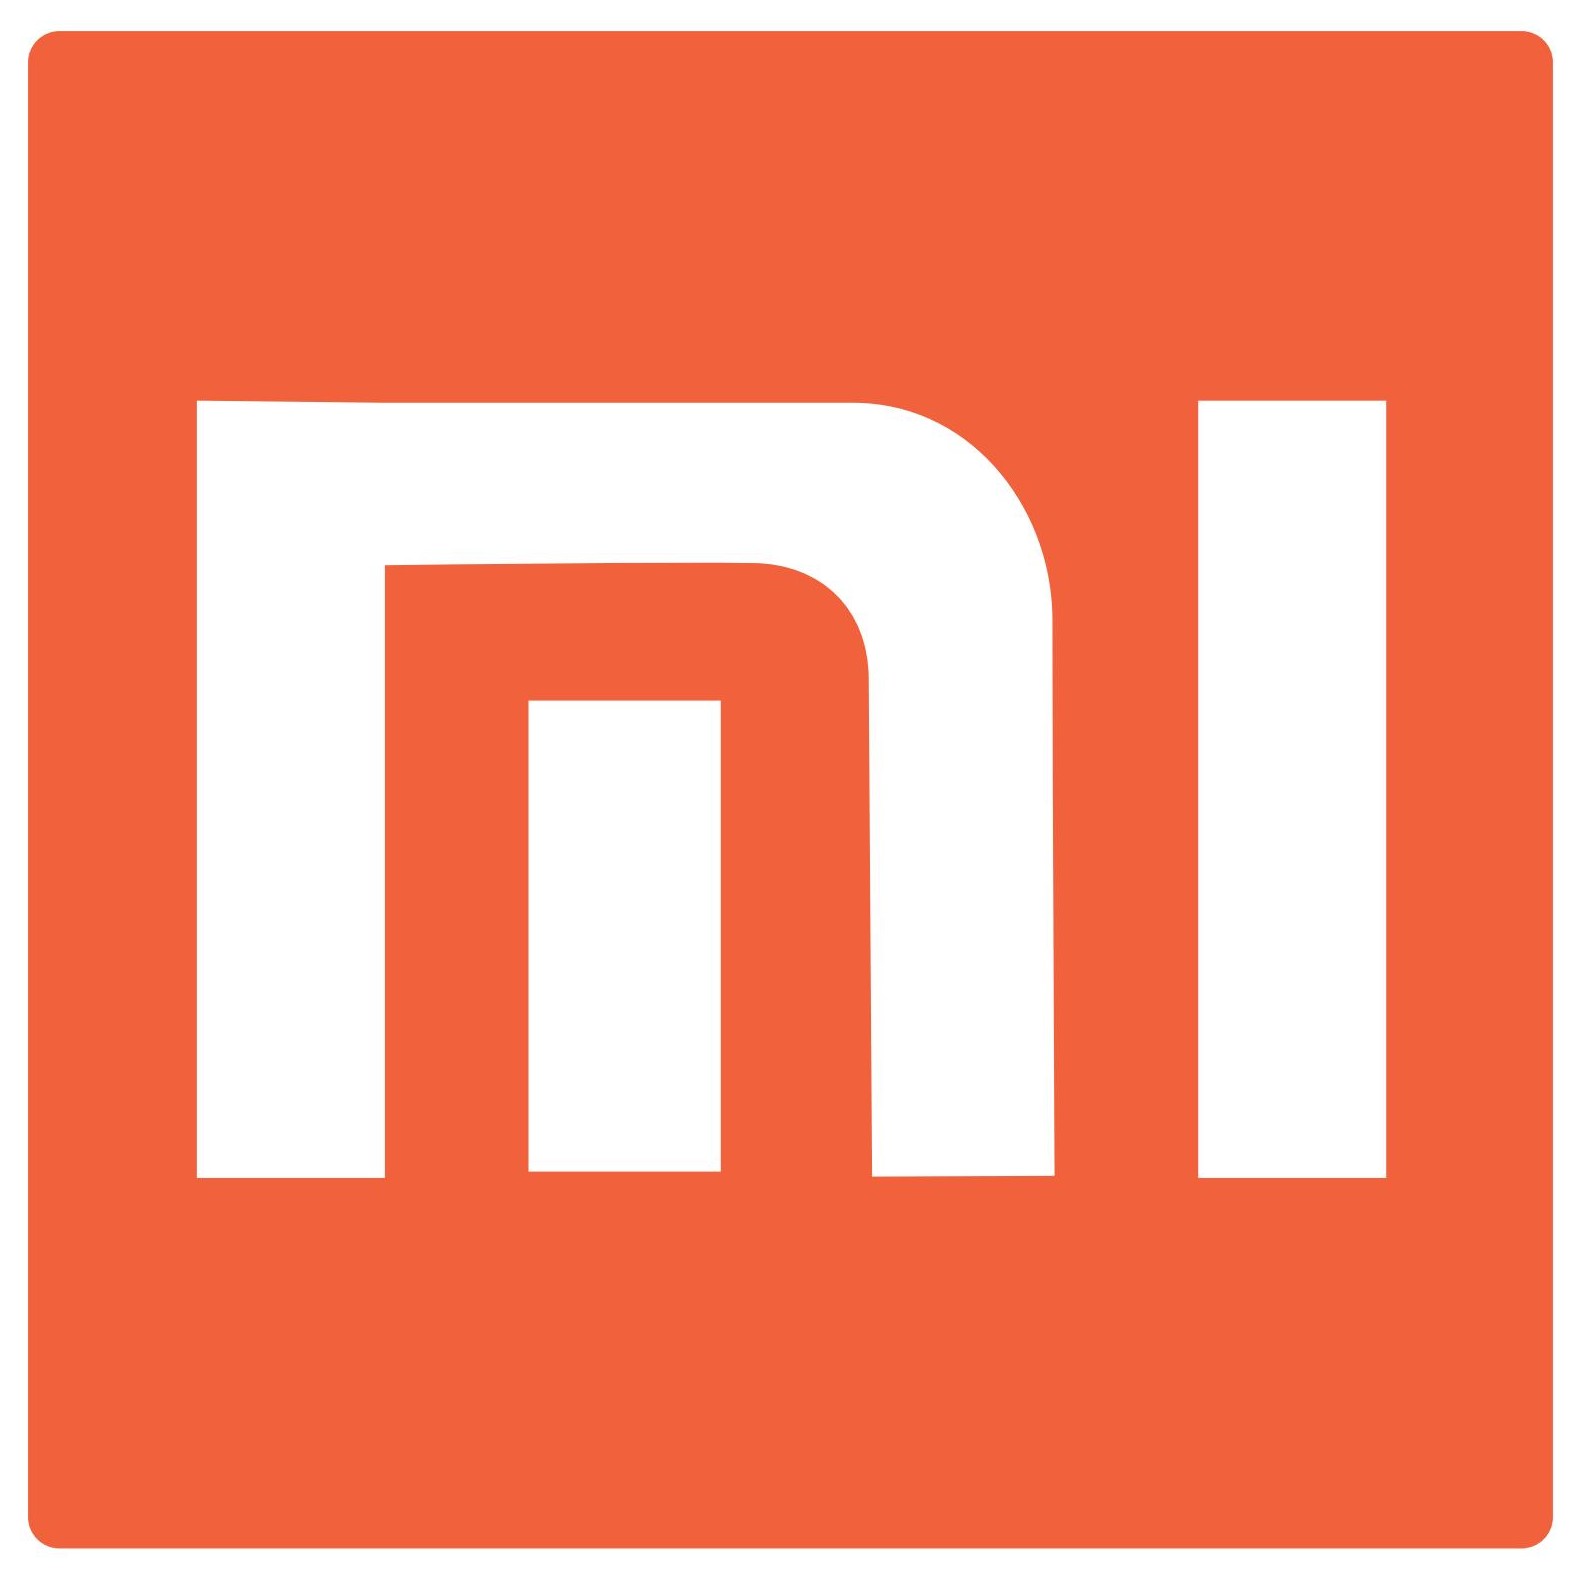 Xiaomi-logo, Xiaomi Vector PNG - Free PNG